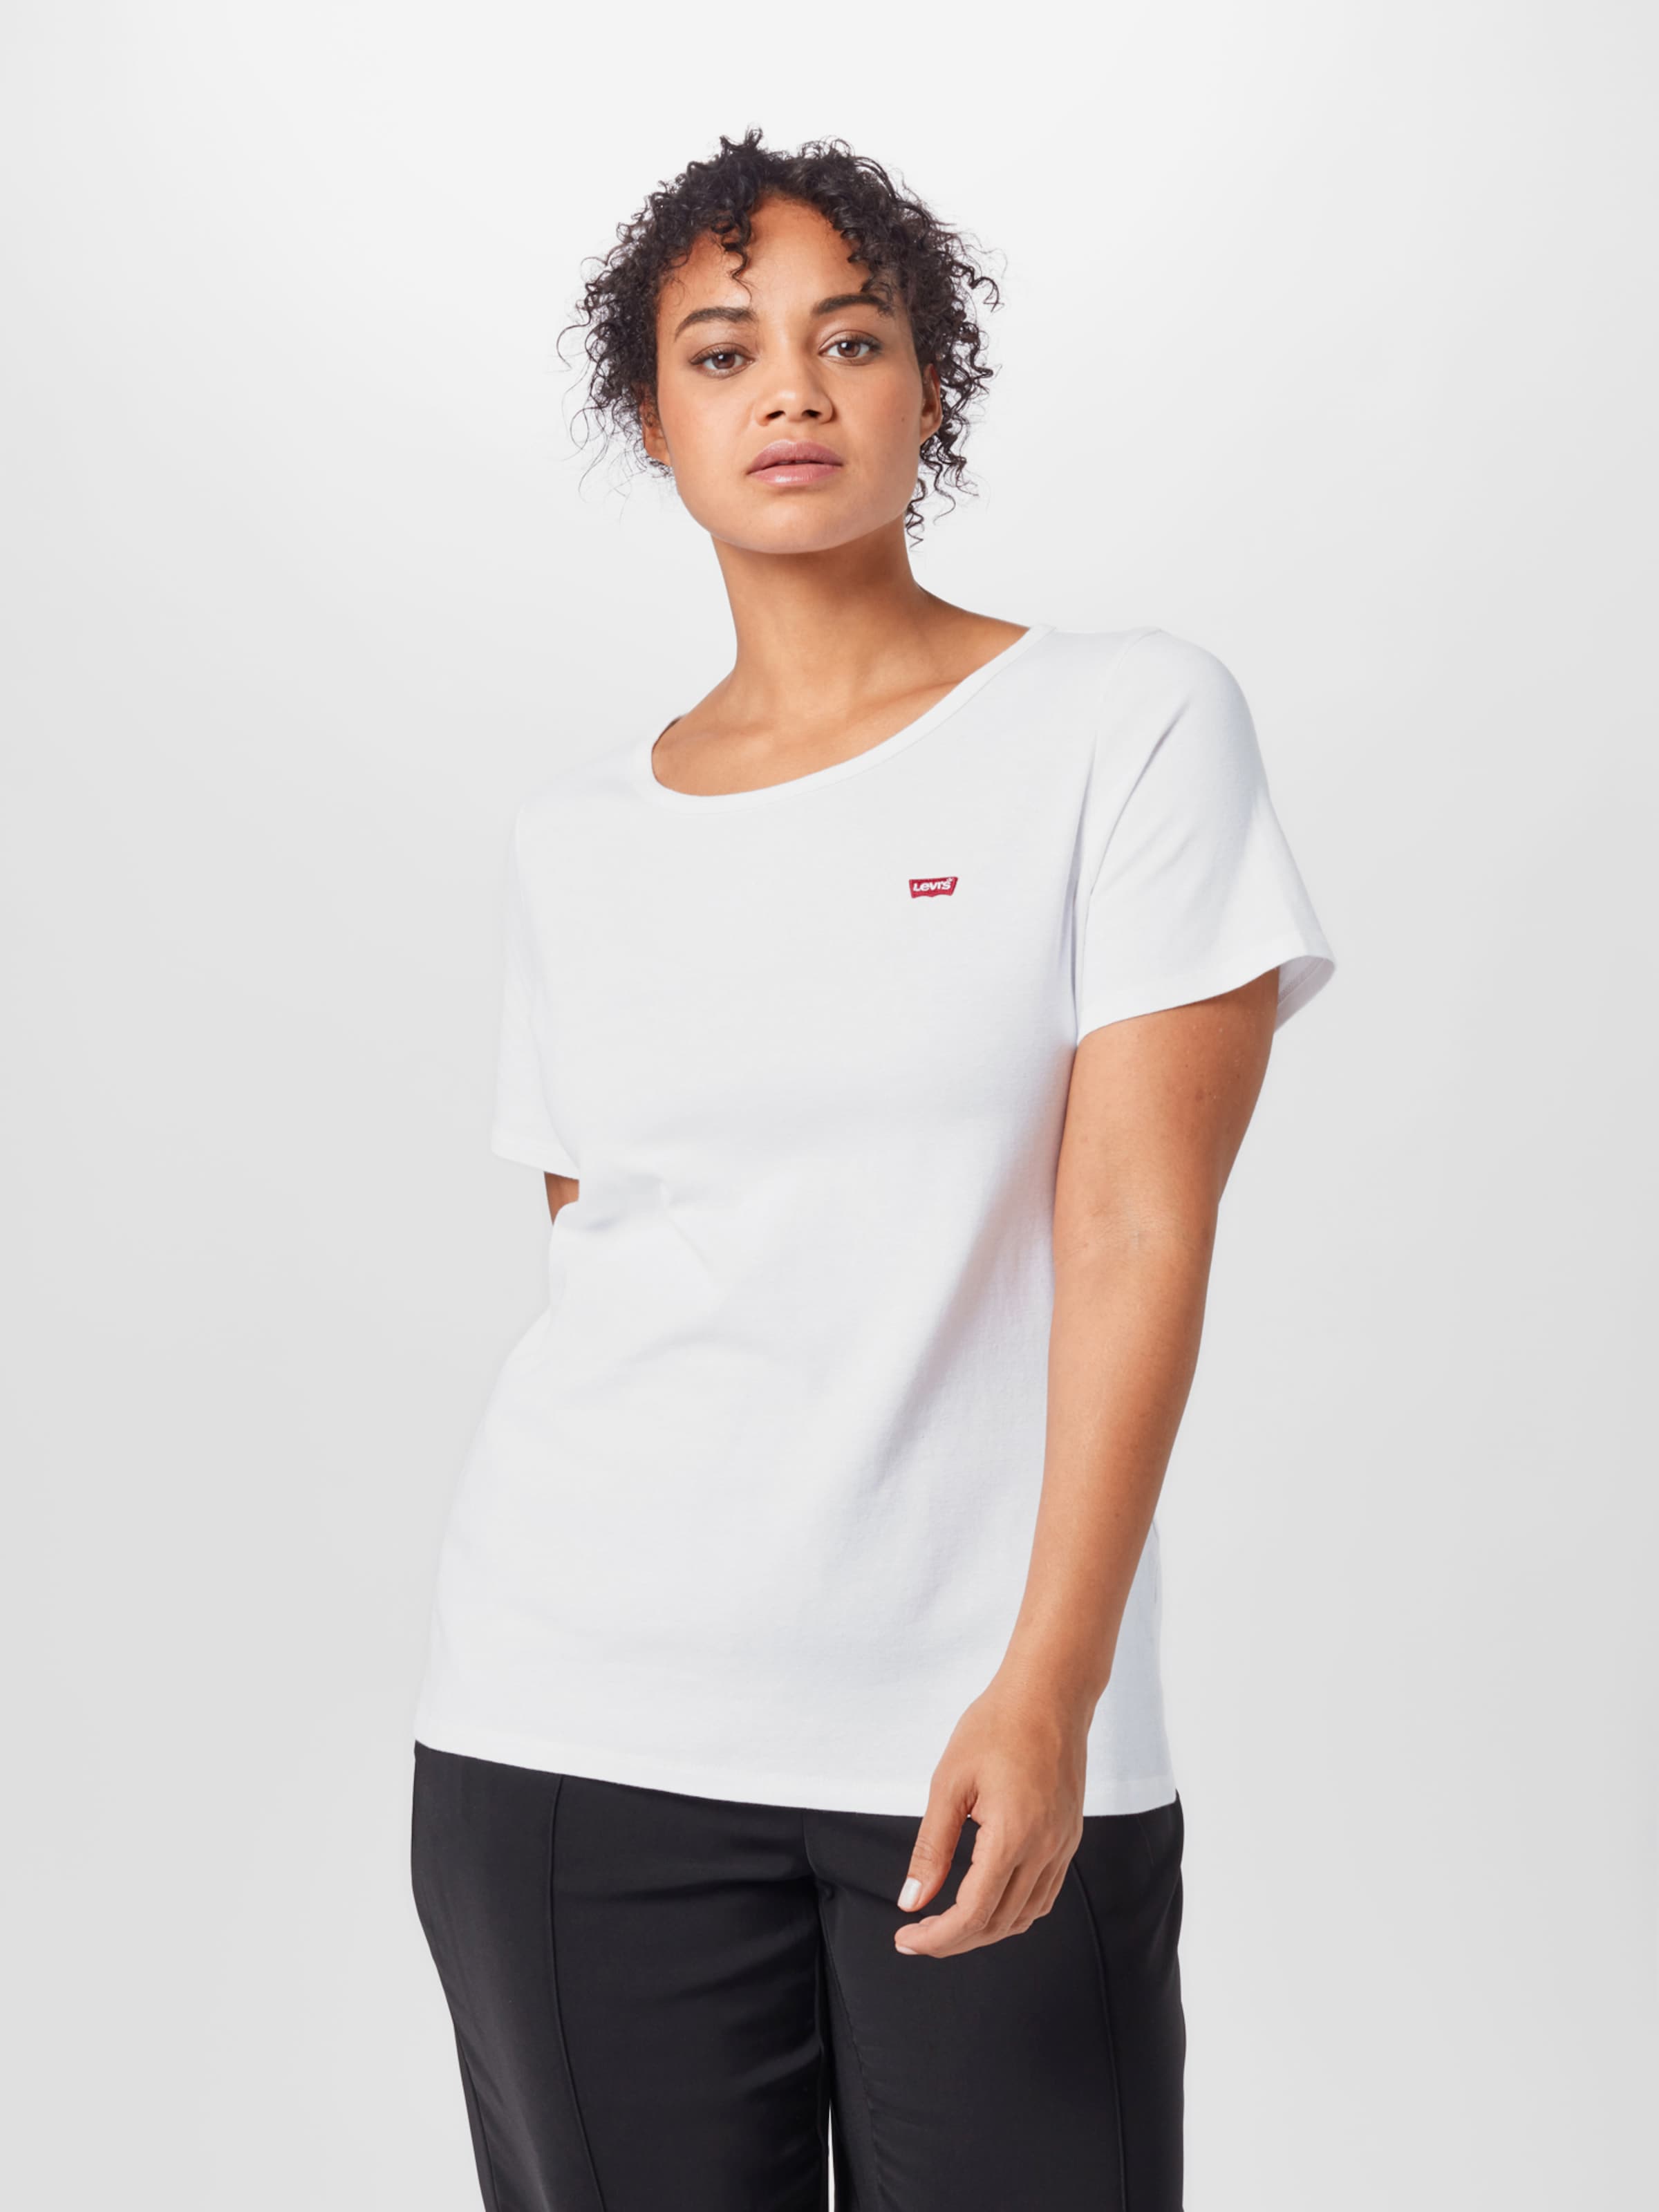 Frauen Shirts & Tops Levi's® Plus T-Shirt in Schwarz, Weiß - UG21612